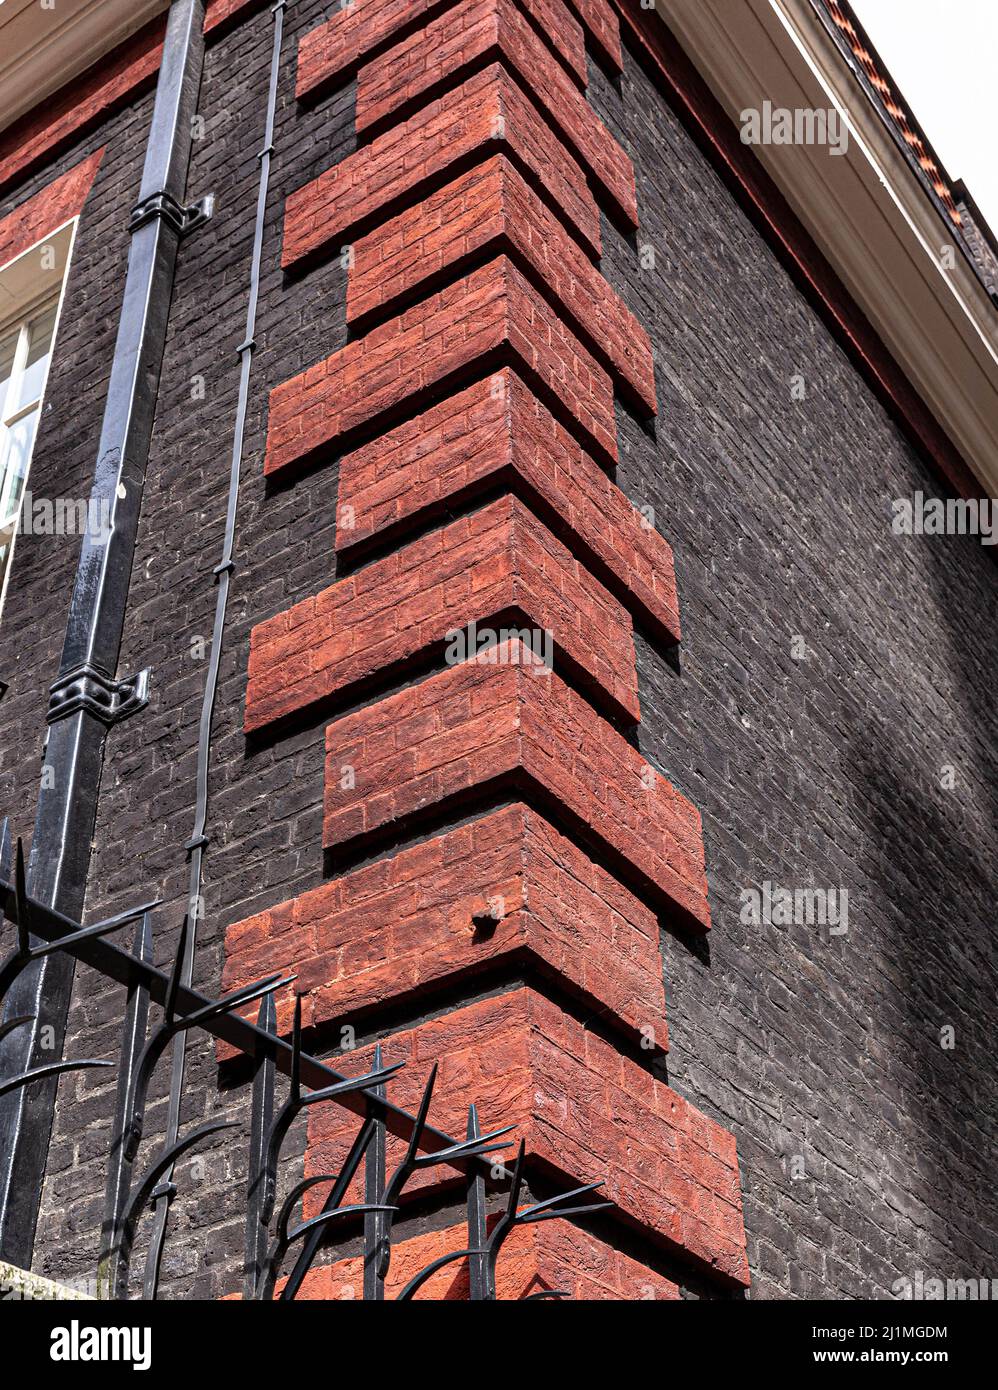 Vista en ángulo bajo de una esquina decorada con quoins de ladrillo rojo, Londres, Inglaterra, Reino Unido. Foto de stock